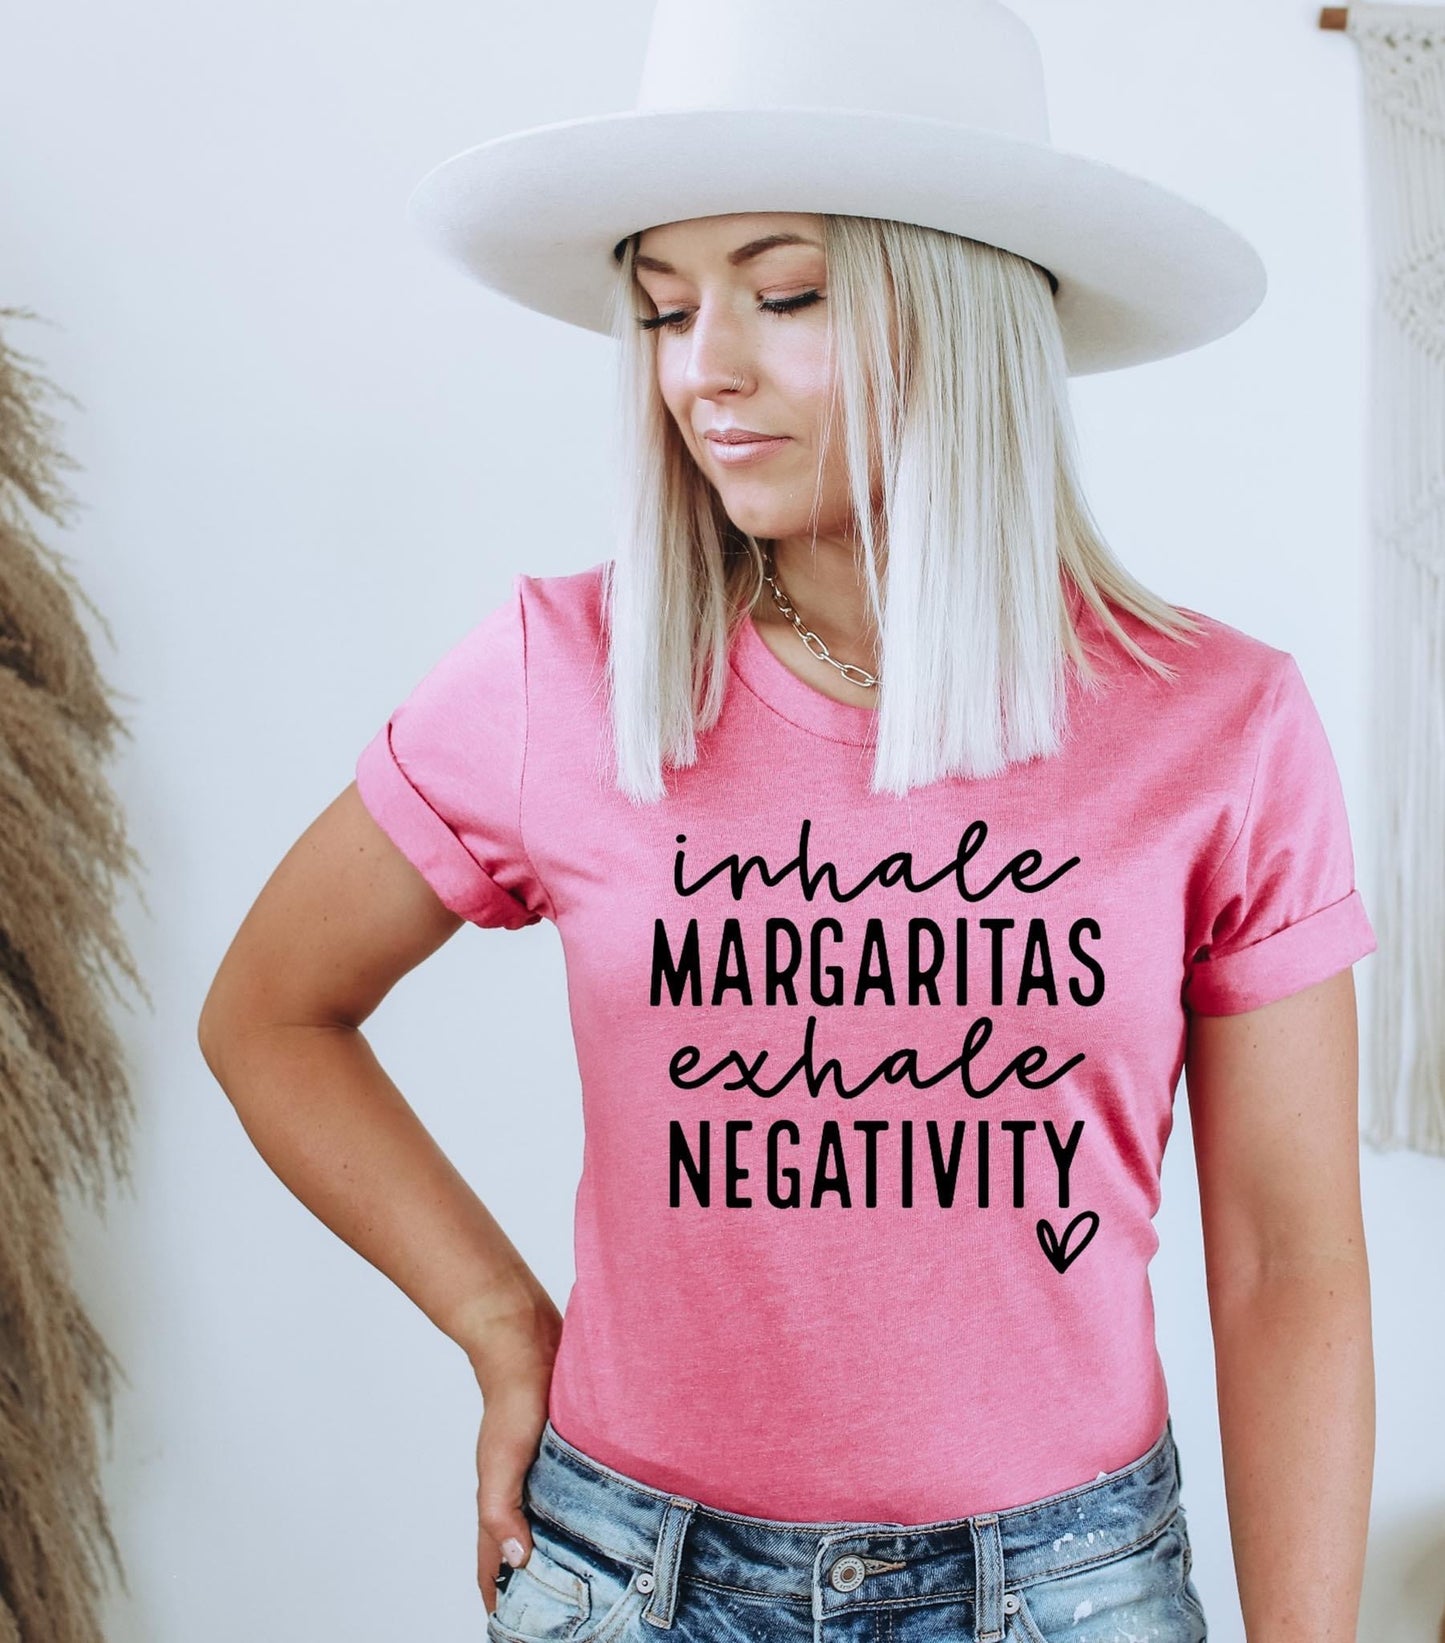 Inhale Margaritas